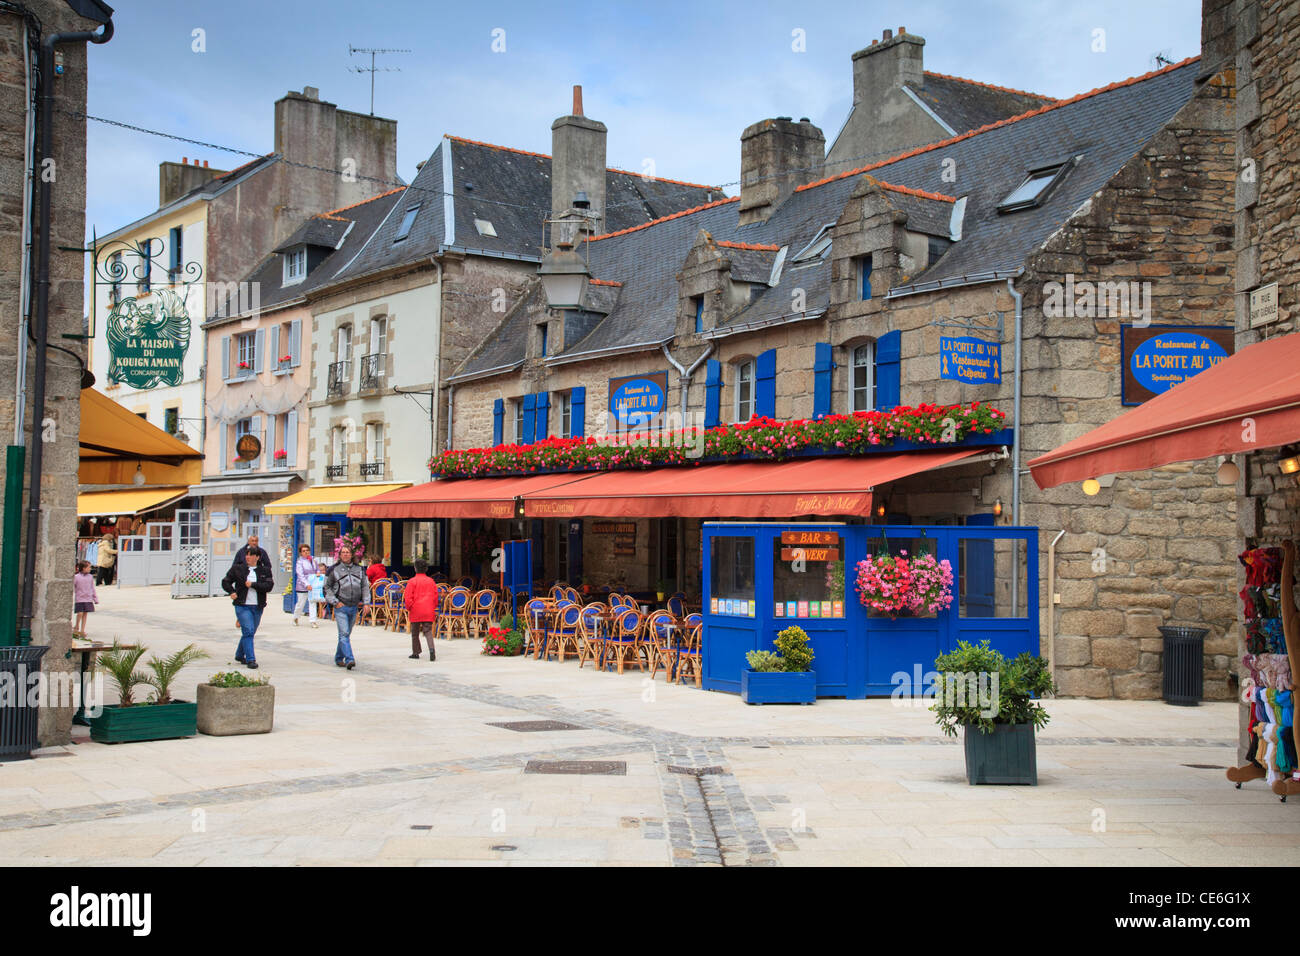 La gente pasea entre las tiendas y restaurantes de la ciudad, cerca del barrio histórico de Cocarneau, Bretaña, Francia. Foto de stock